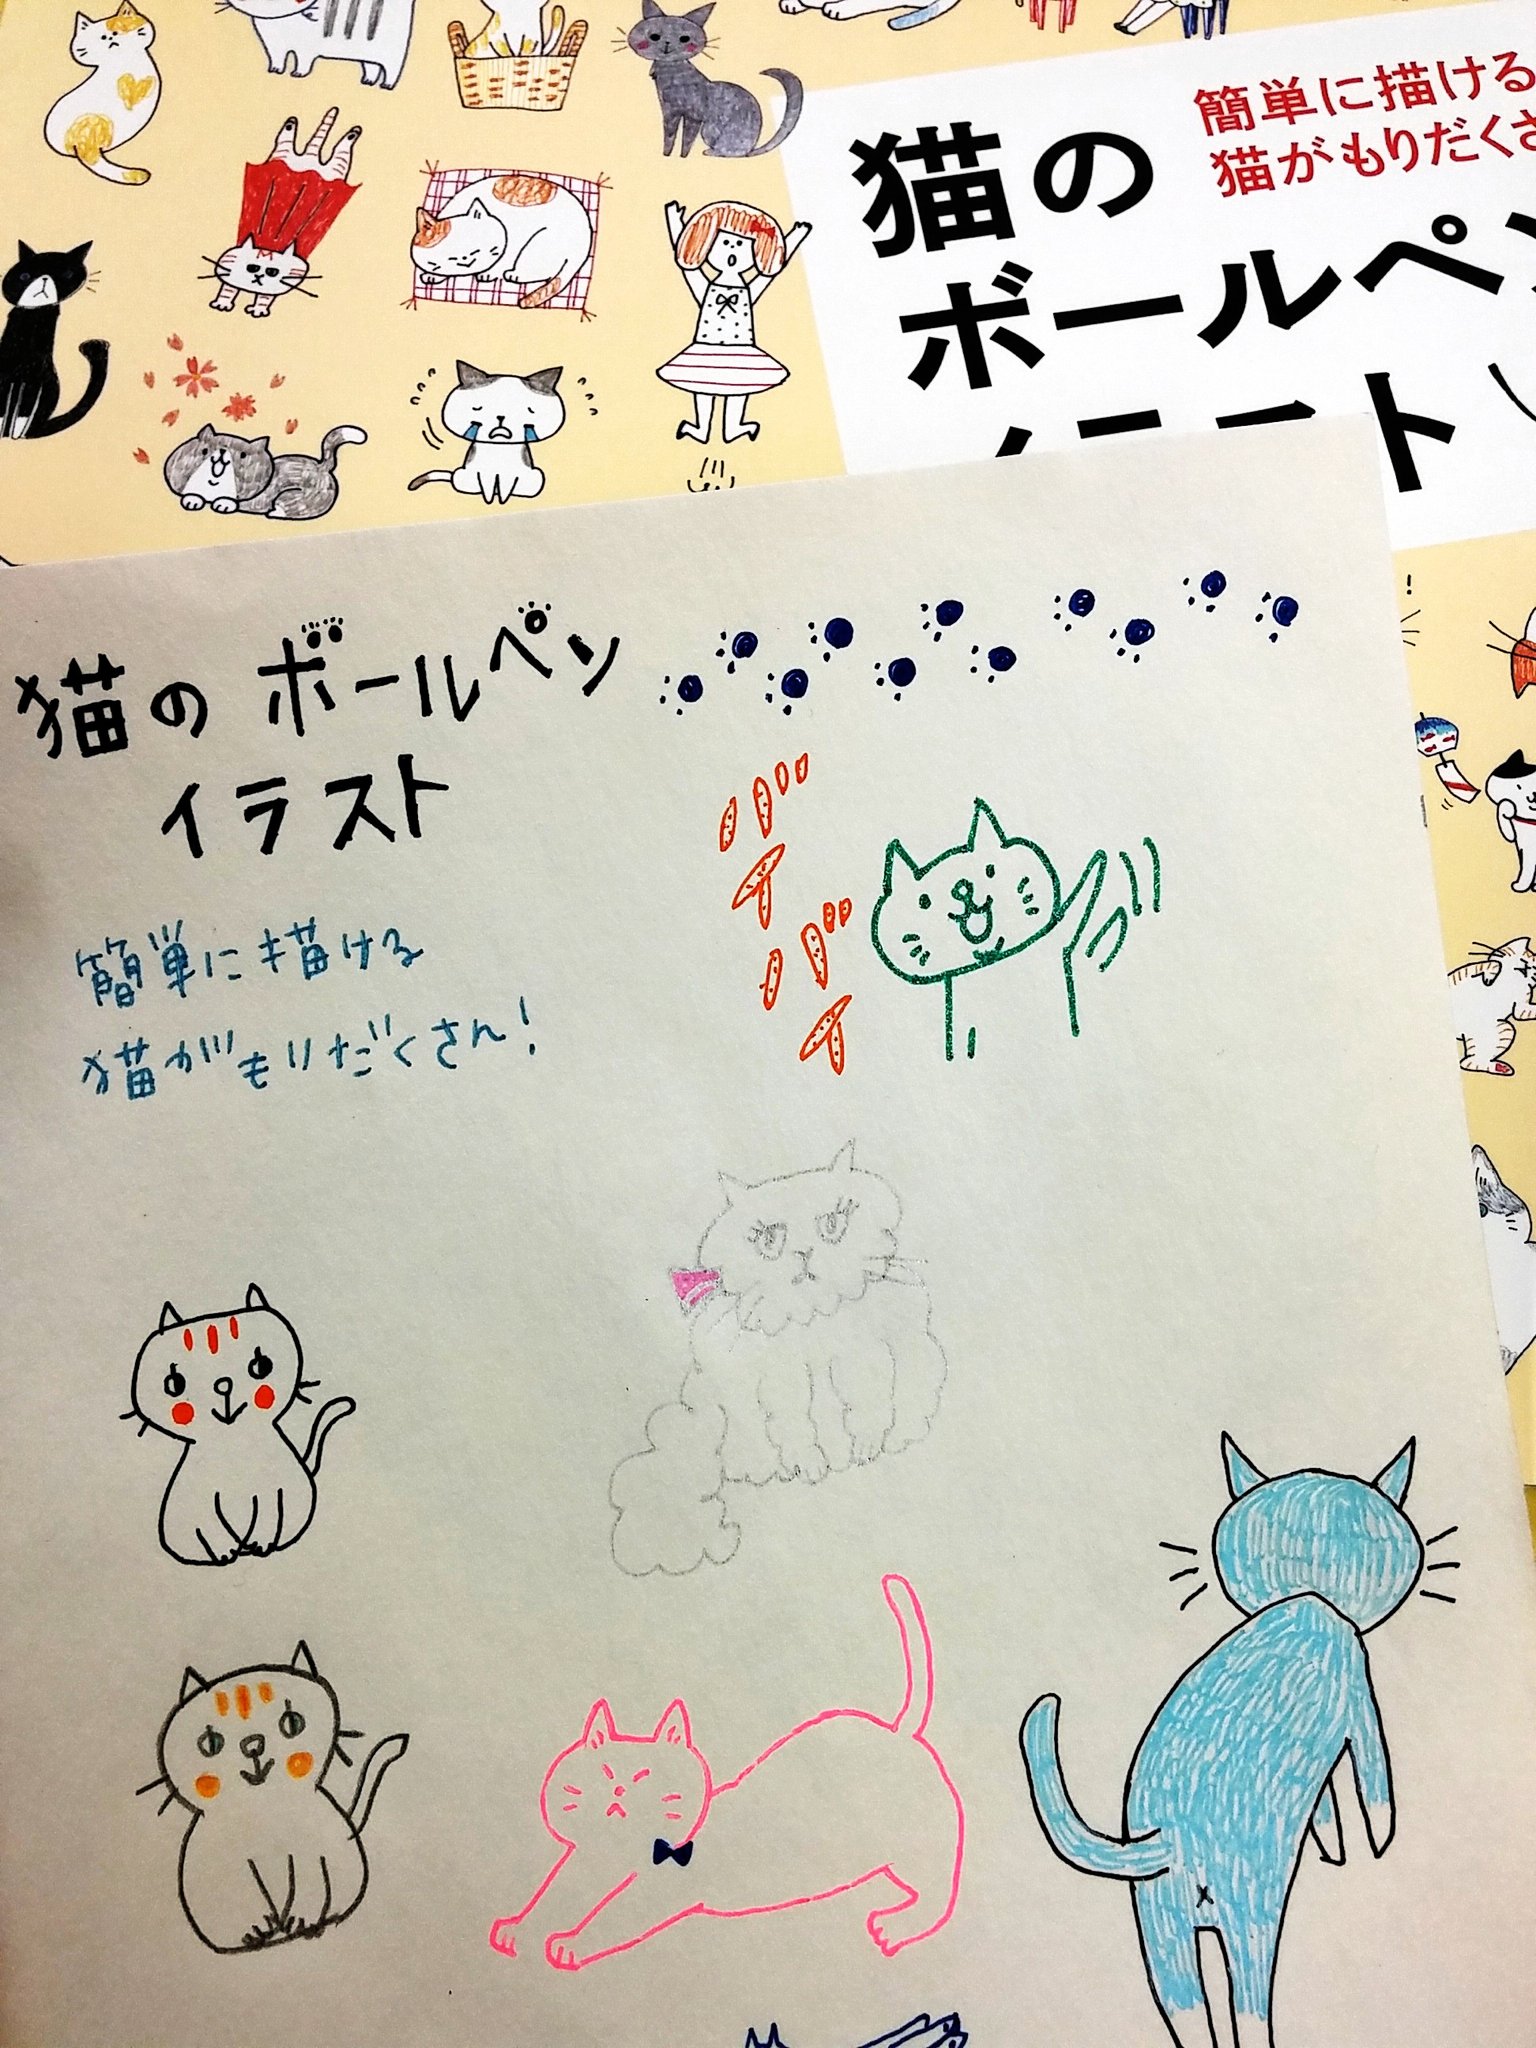 トゥールズ大阪梅田店 Twitterren 猫 犬のボールペンイラスト 両方お取り扱いしております ェ U ェ U バリエーション豊かです 色鉛筆で描いてみても雰囲気変わっていいですよ T Co Yapxj2qygk Twitter